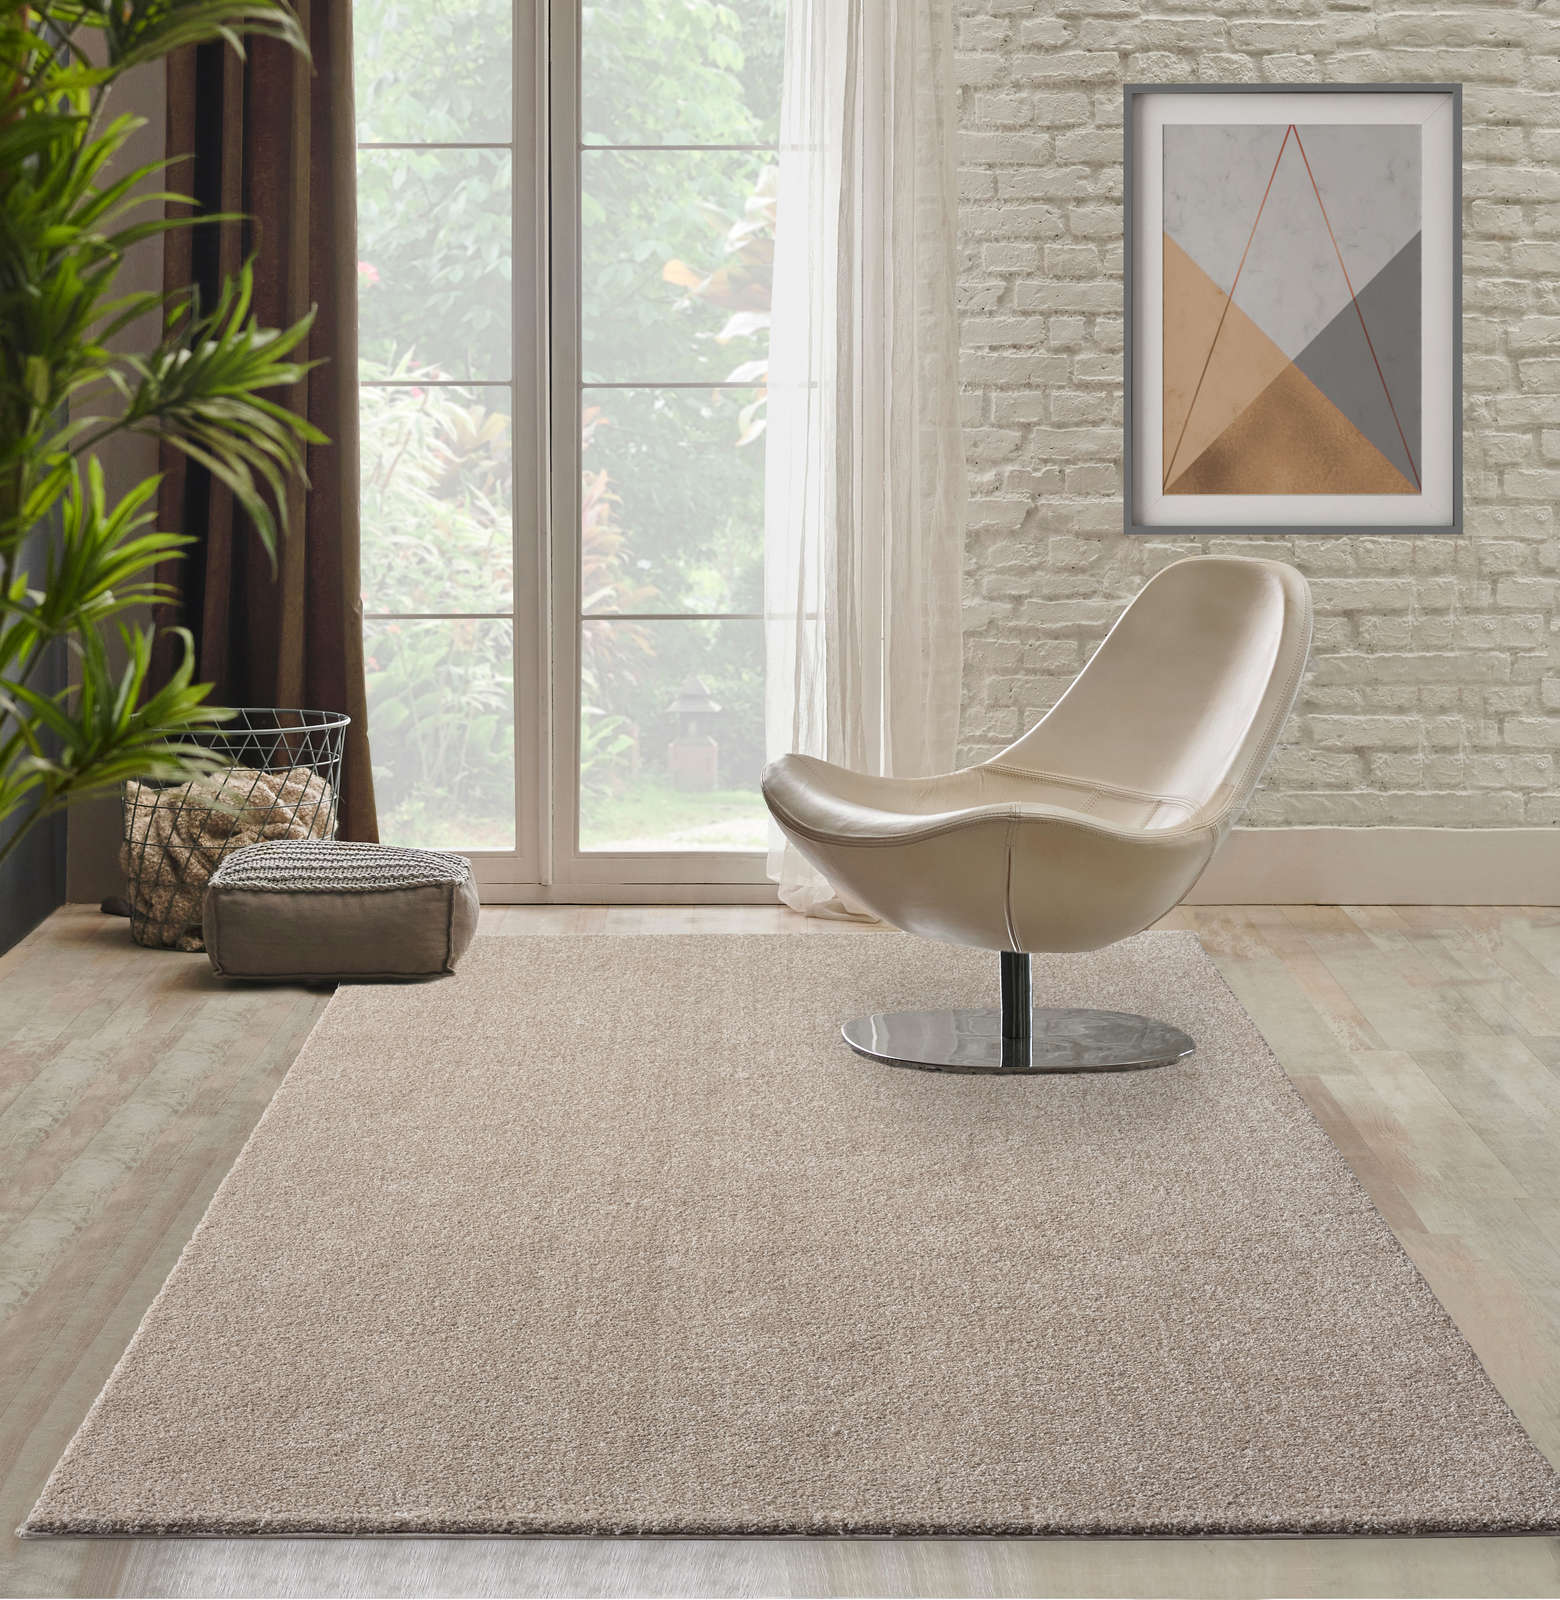             Zacht kortpolig tapijt in beige - 290 x 200 cm
        